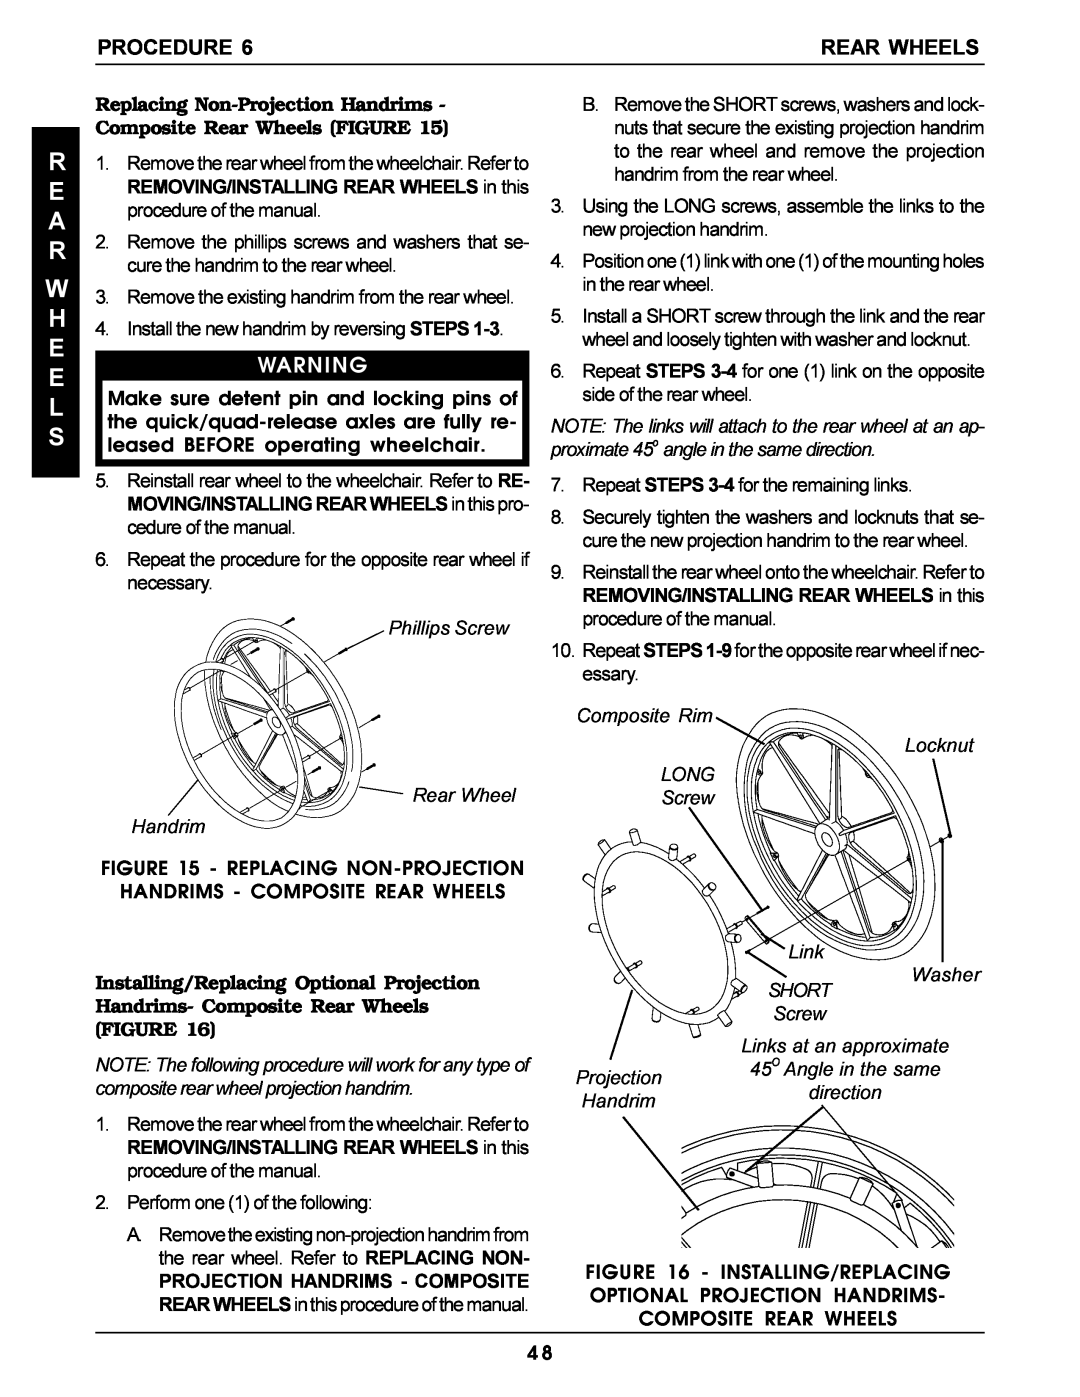 Invacare Pro Series manual Replacing Non-Projection Handrims - Composite Rear Wheels FIGURE, R E A R W H E E L S, Procedure 